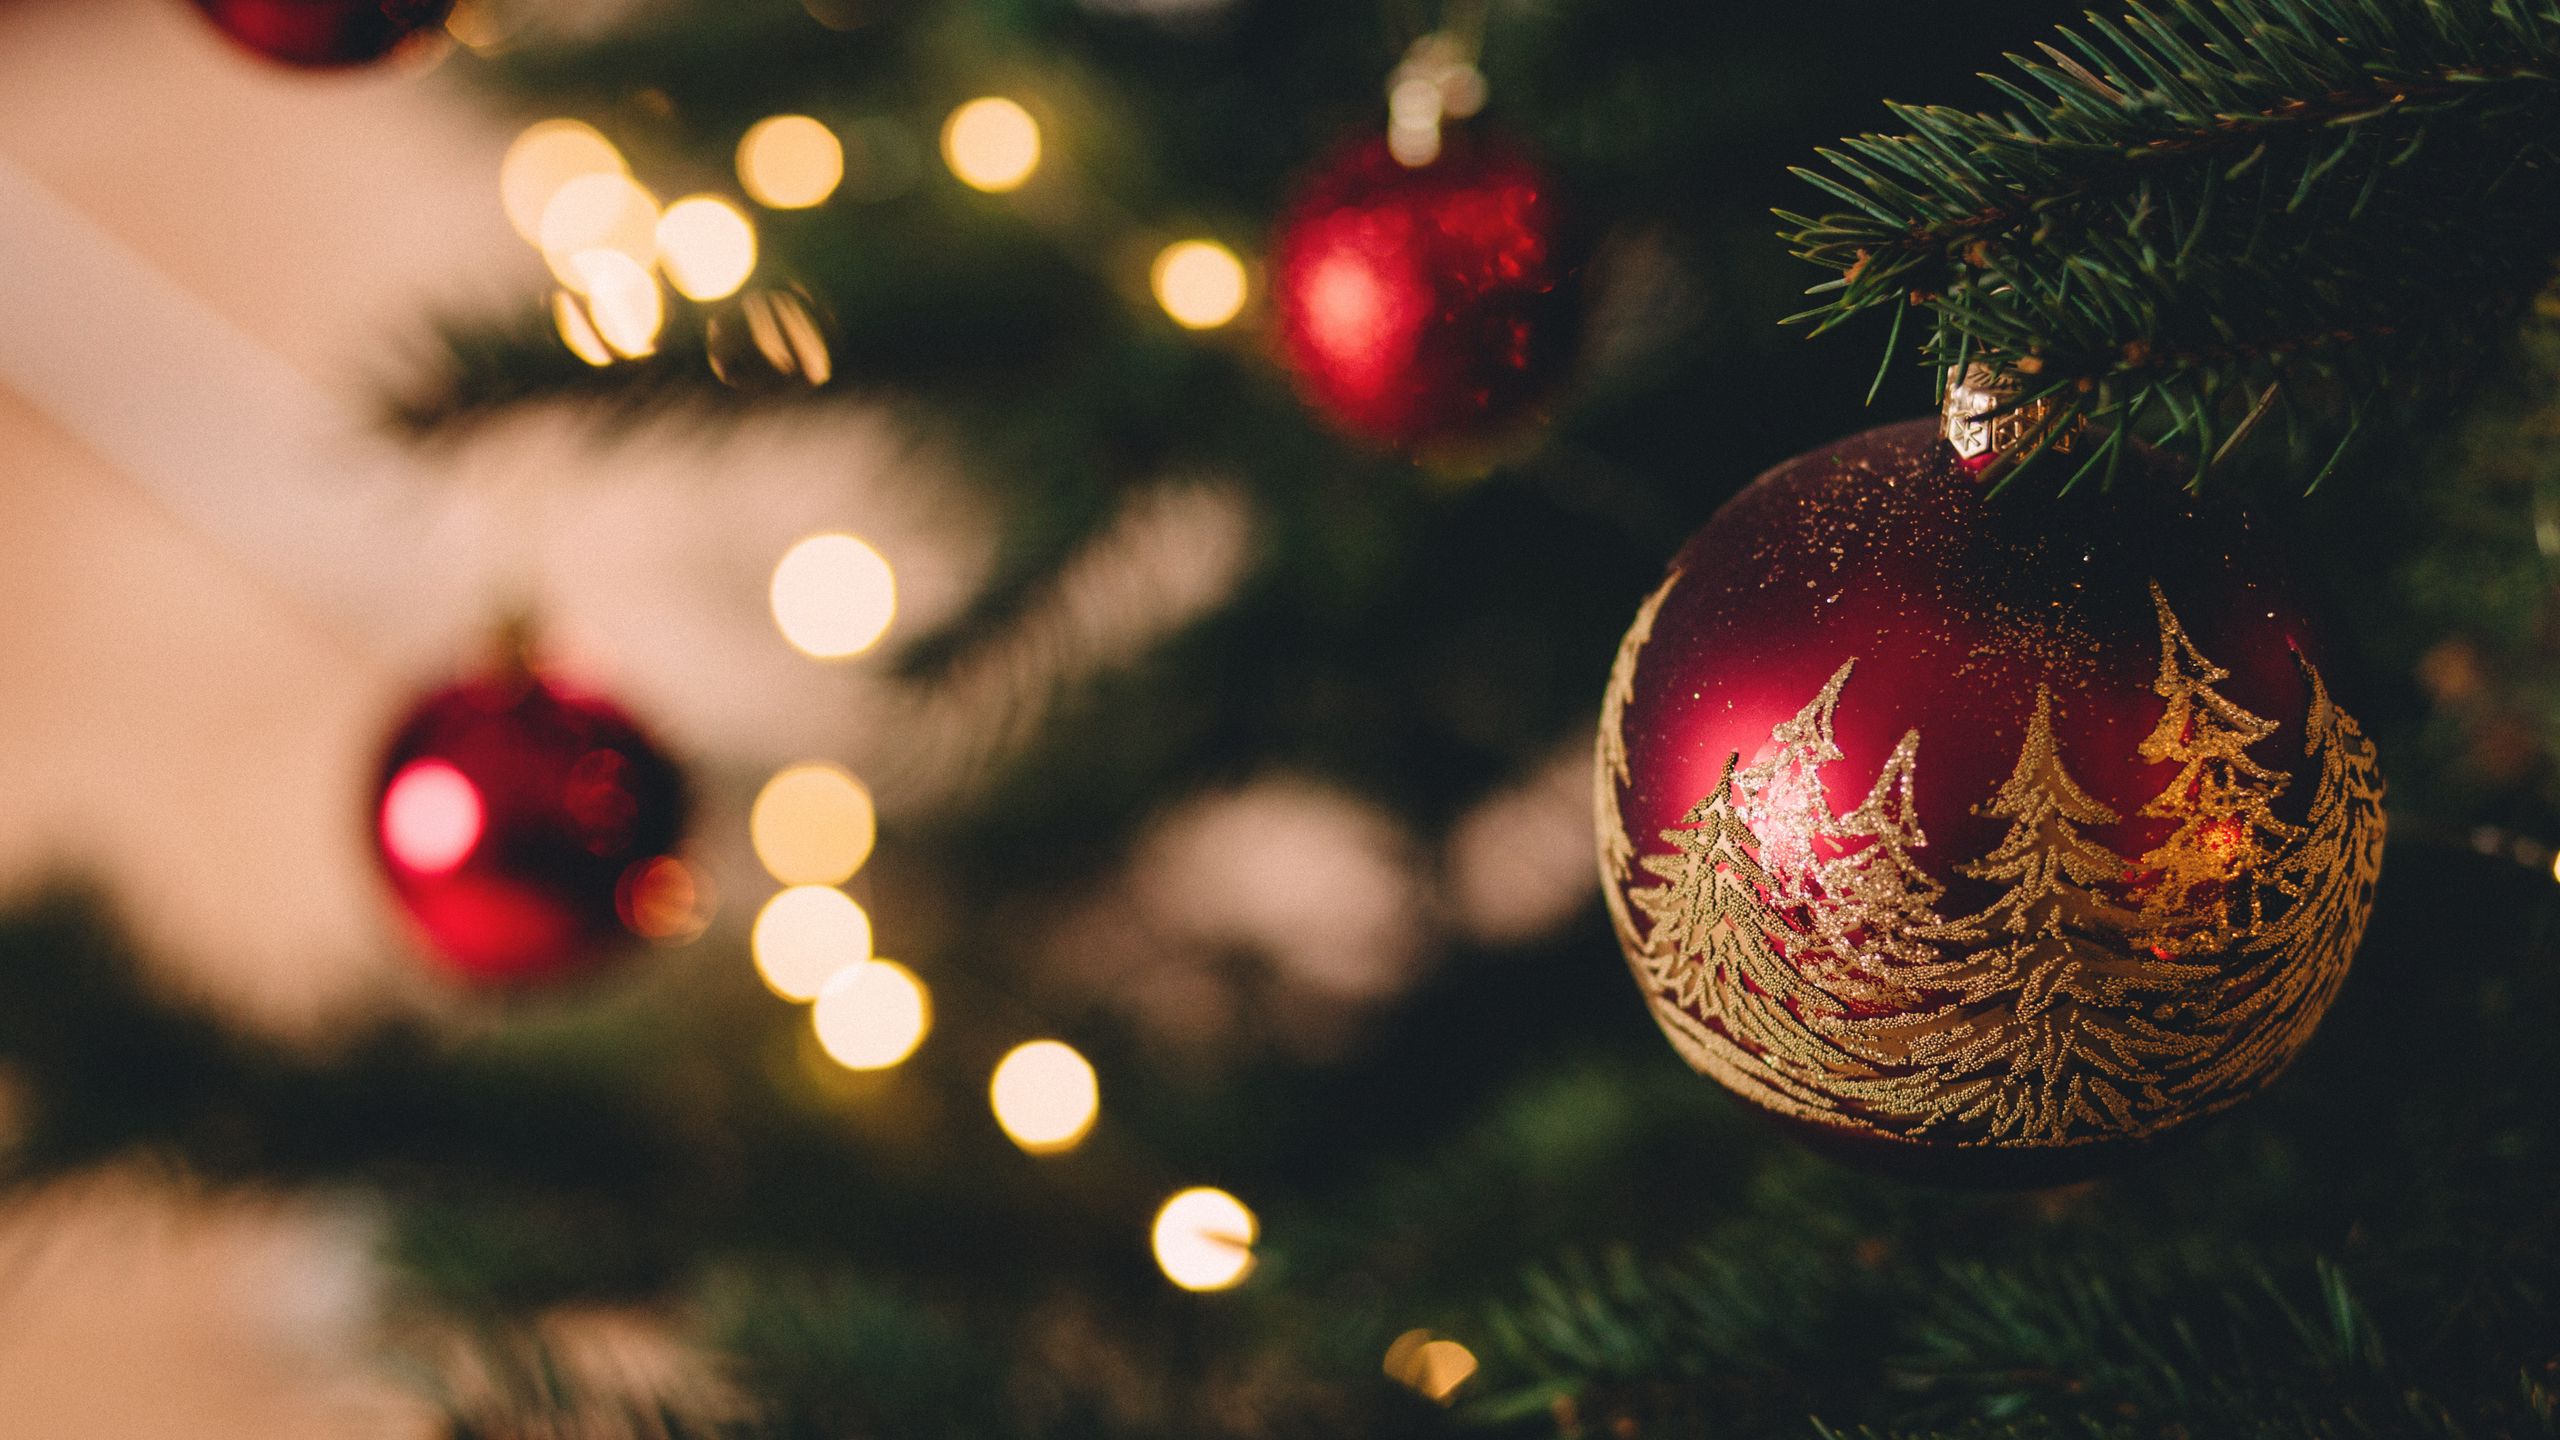 Hình nền cây thông Giáng Sinh 2560x1440 sẽ đem đến cho bạn bầu không khí Noel đầy phấn khích. Tận hưởng không gian tràn ngập màu sắc, ánh sáng và niềm hạnh phúc đầy lạc quan.